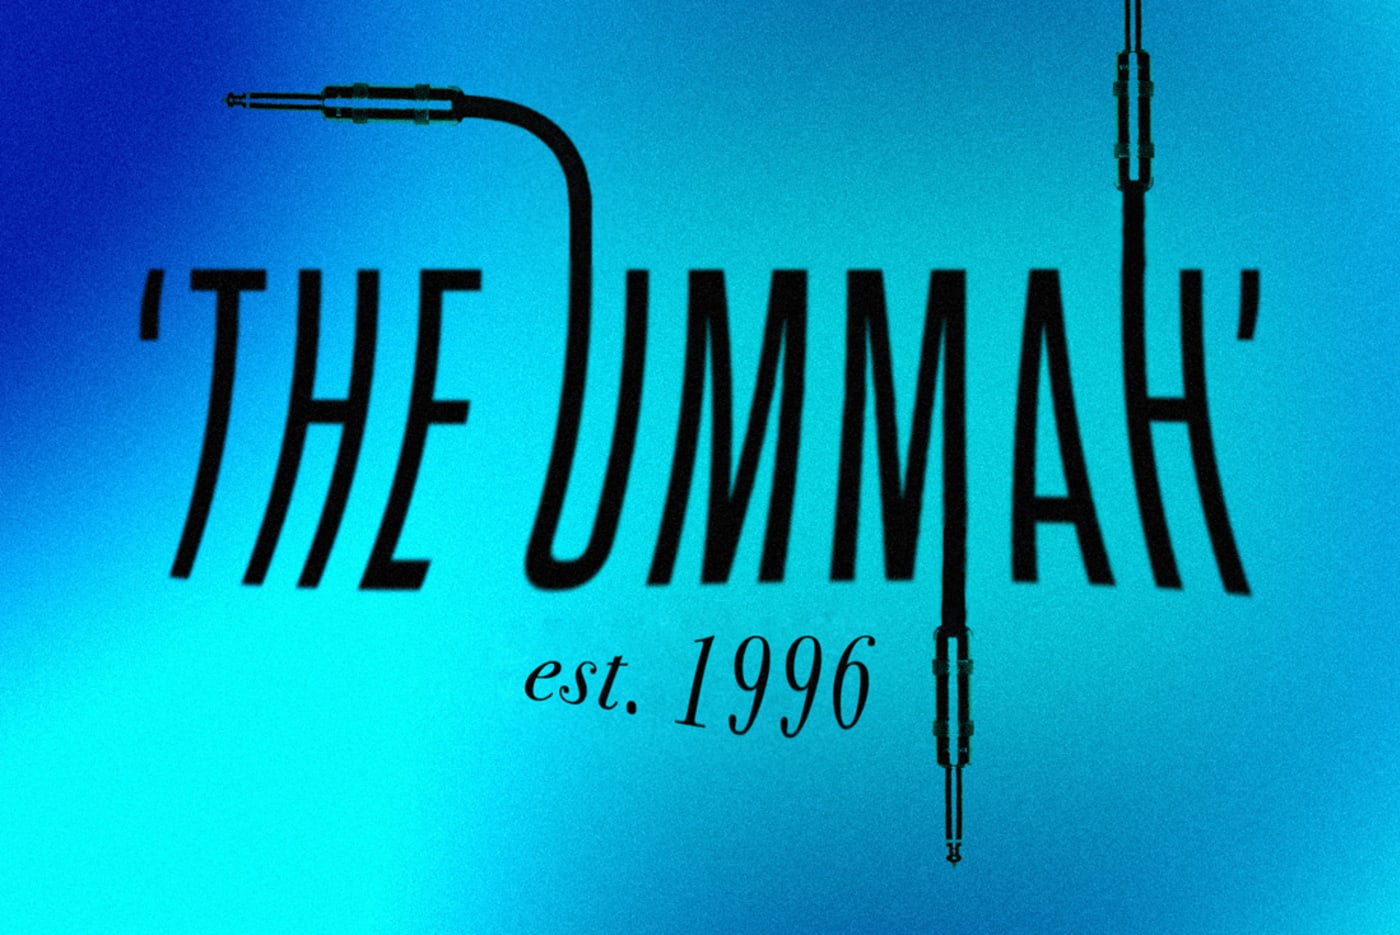 The Ummah